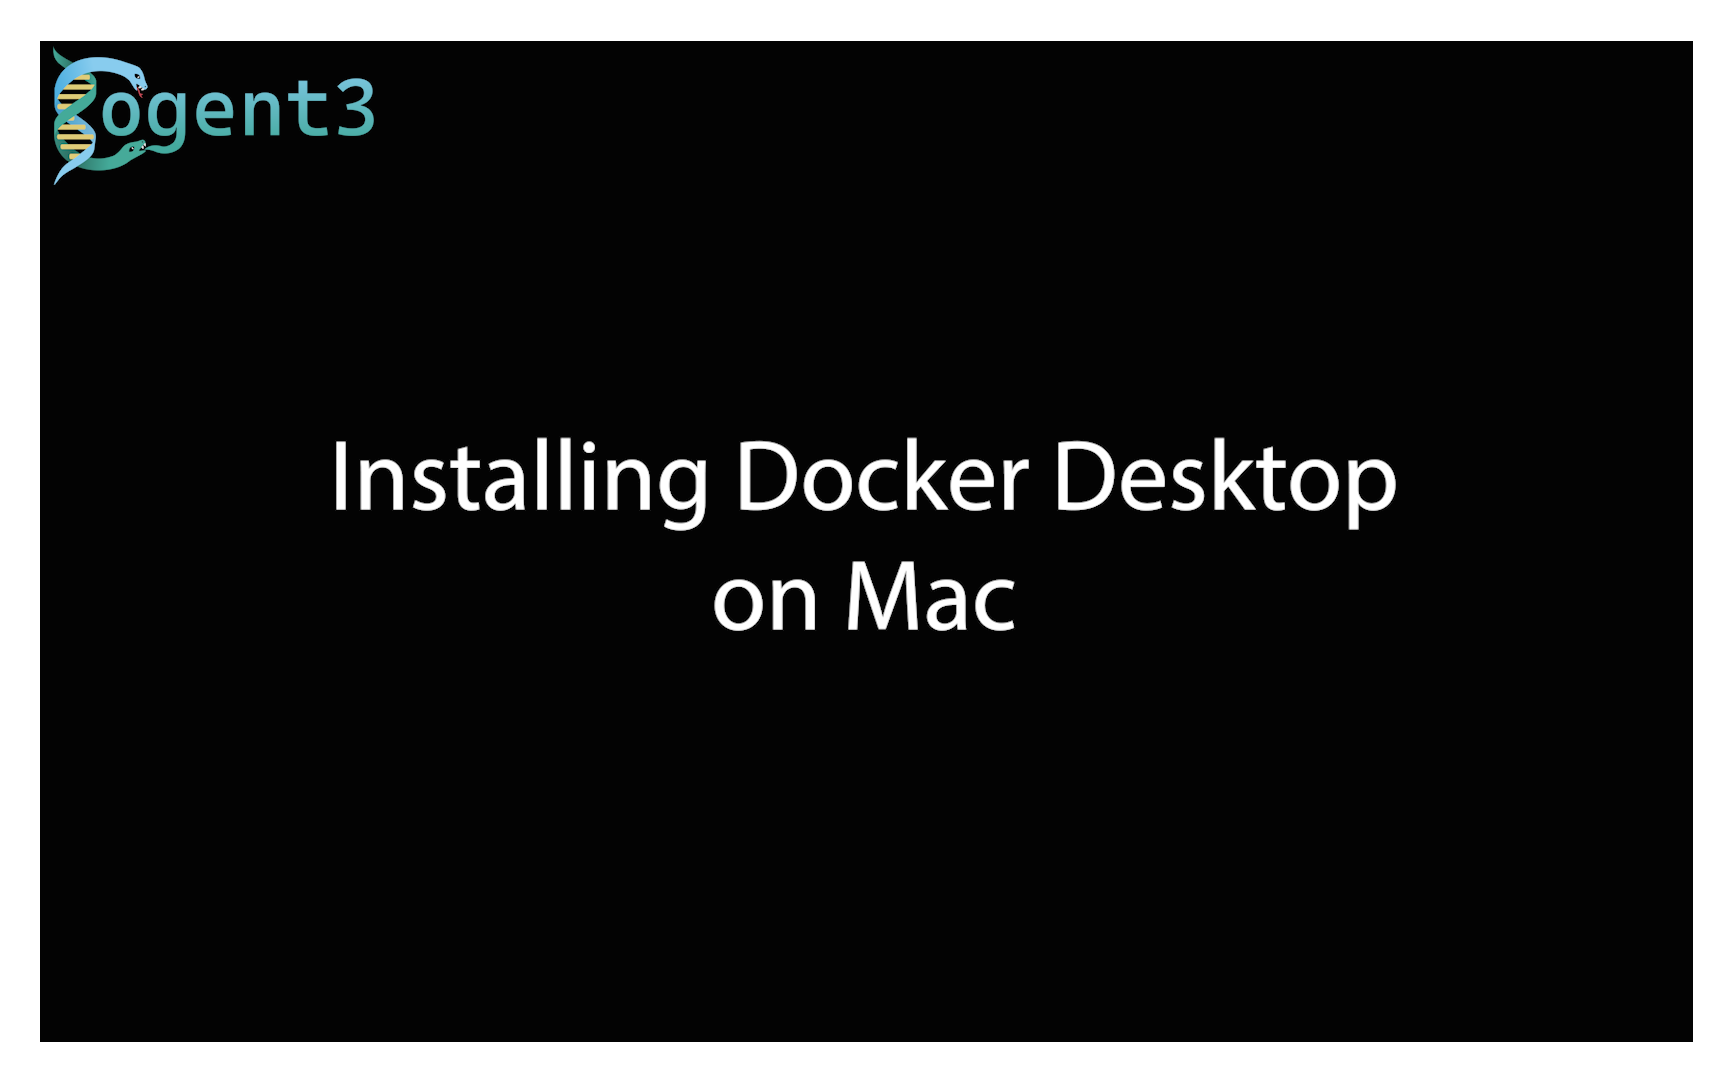 Installing Docker on Mac